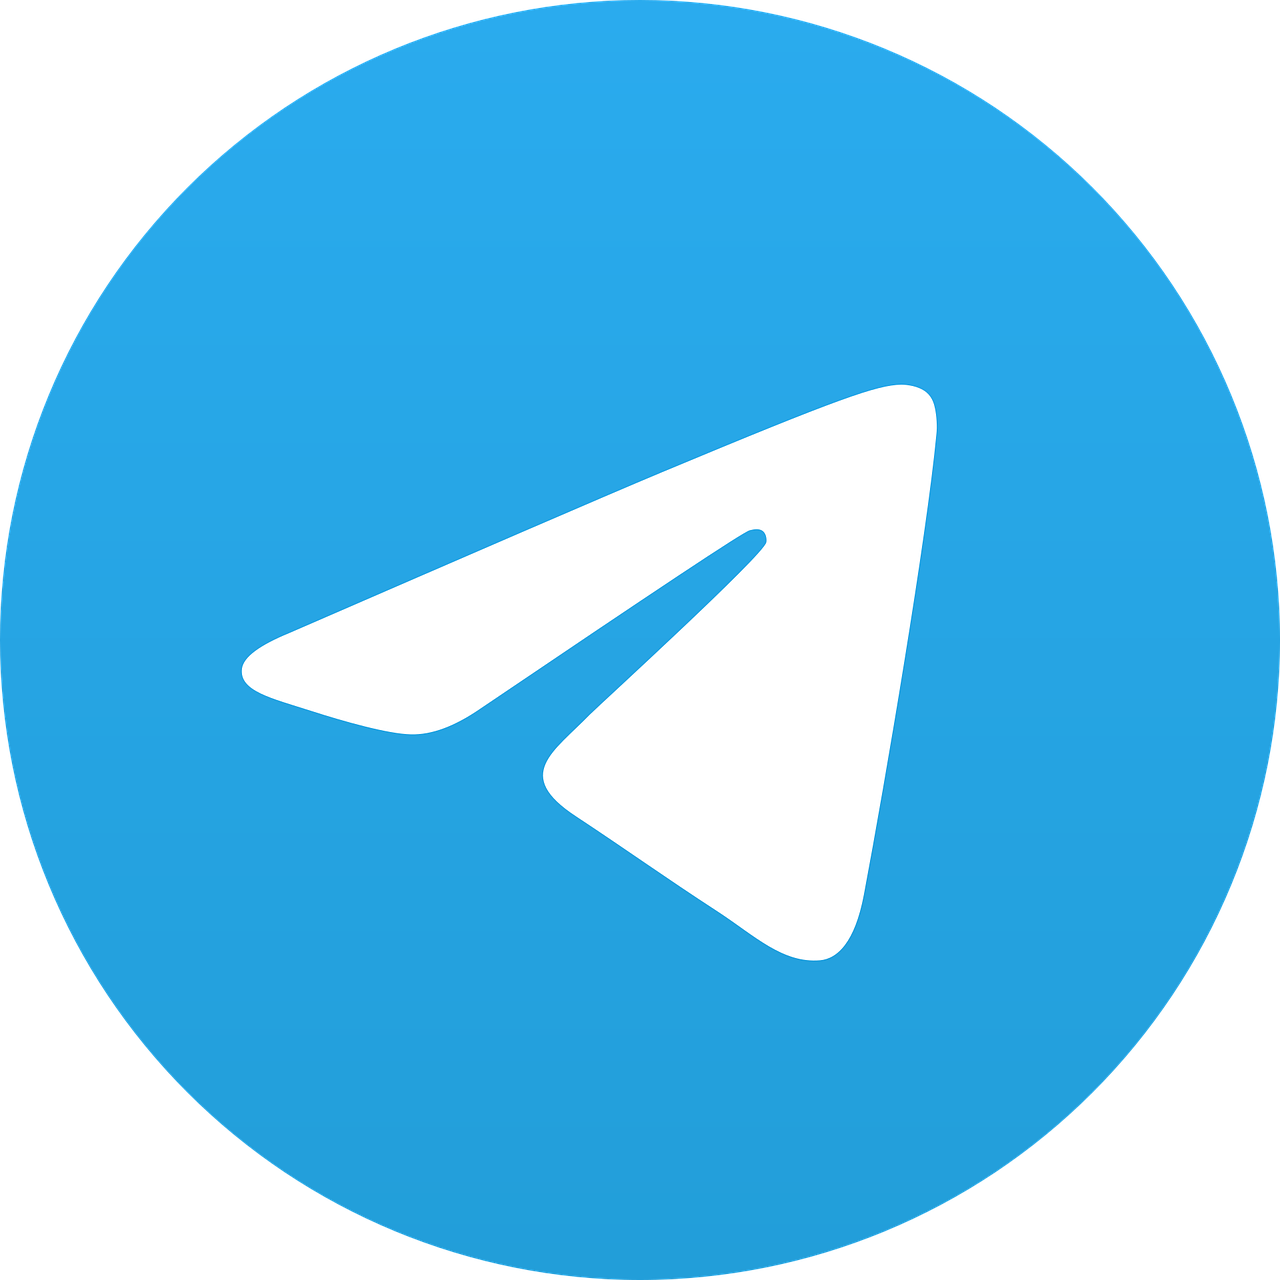 telegram icon, telegram logo, telegram-6896828.jpg